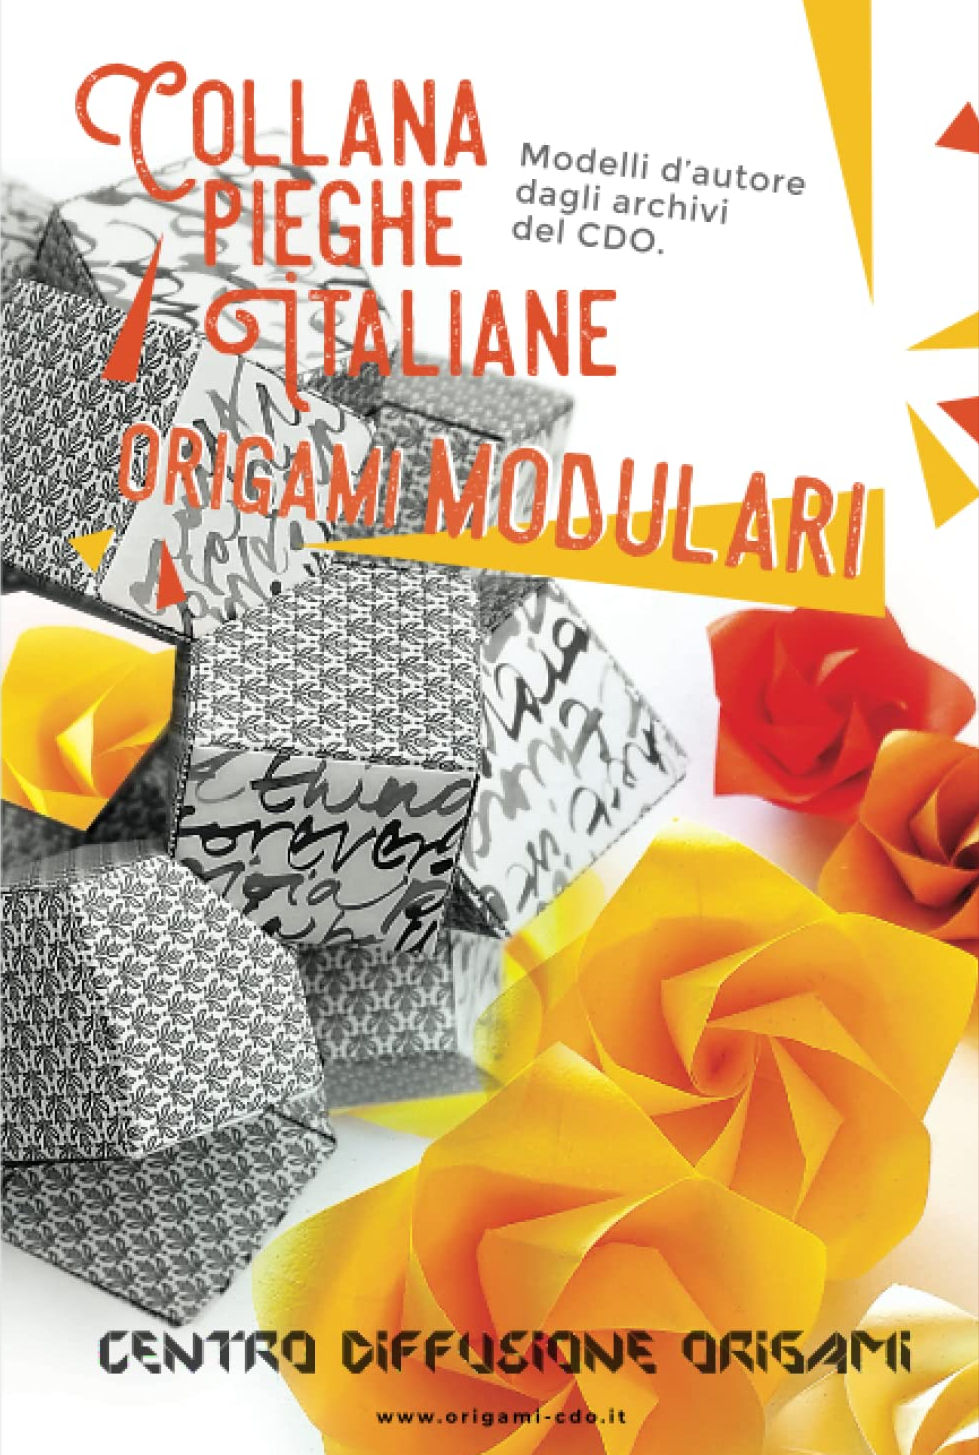 Collana pieghe Italiane - origami MODULARI : page 140.